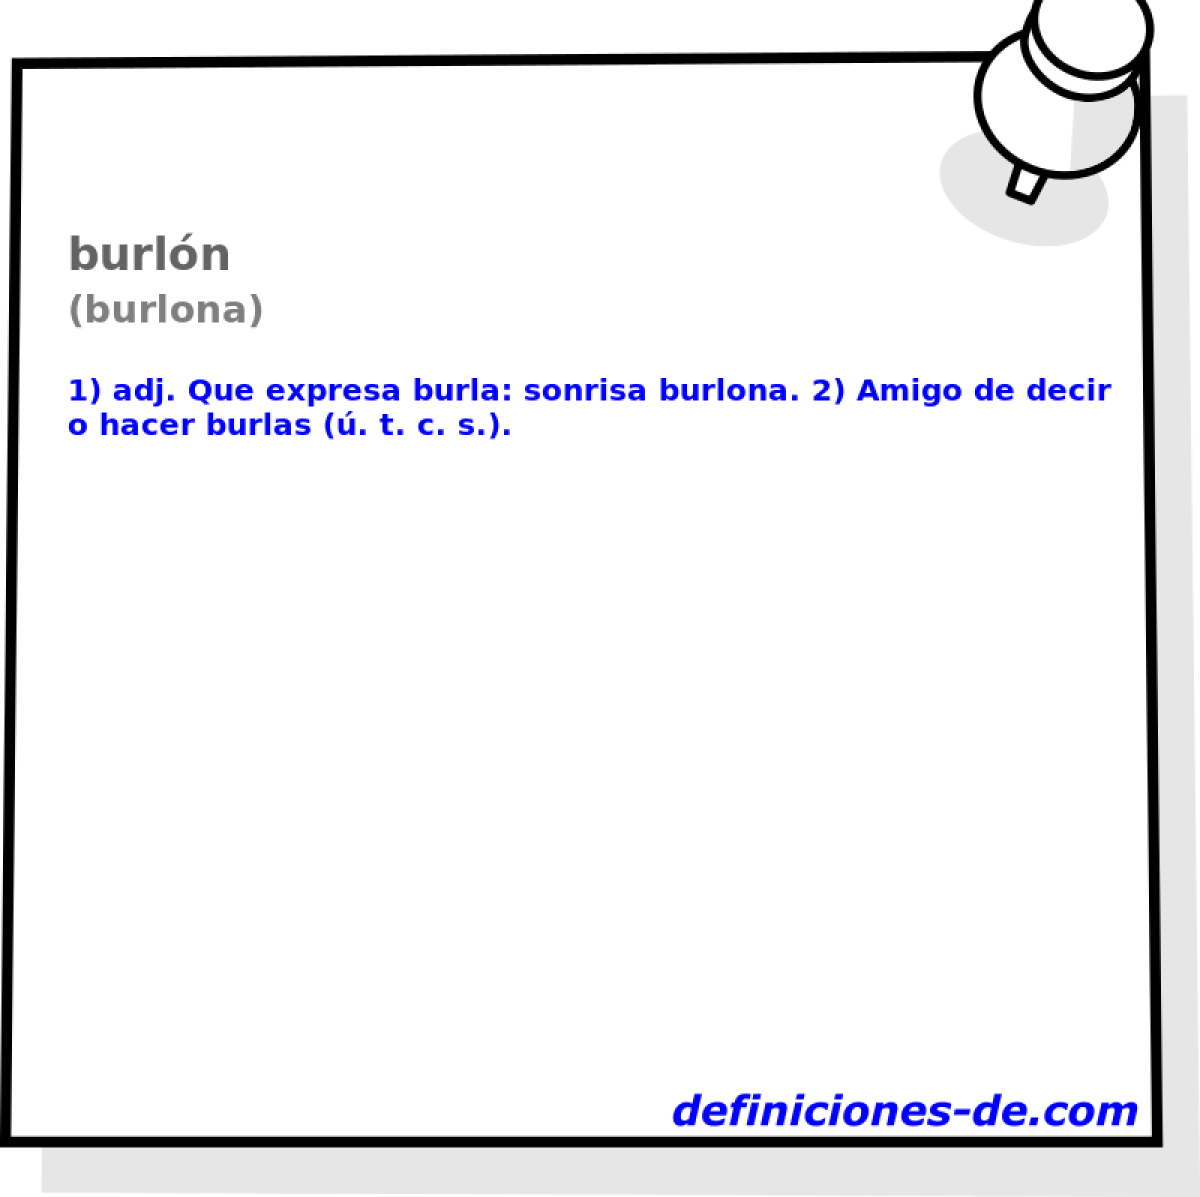 burln (burlona)